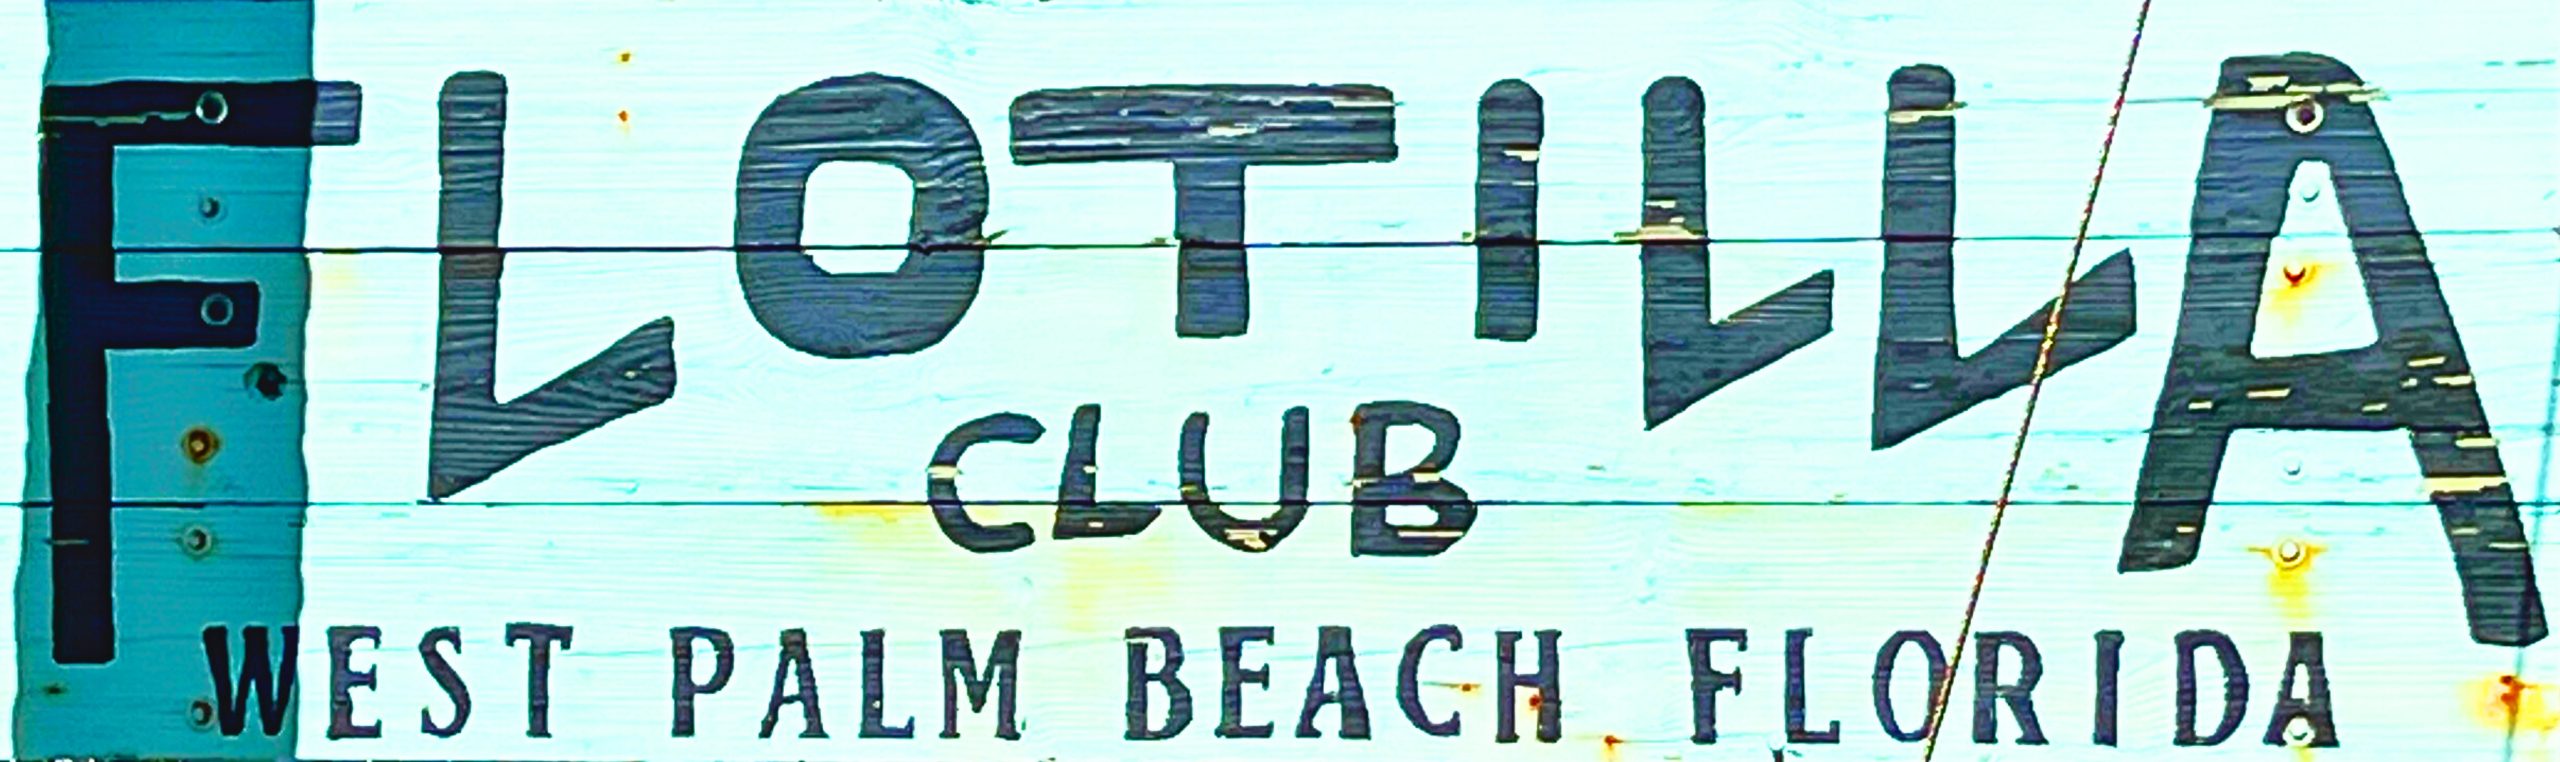 Flotilla Club, West Palm Beach, FL - Sign